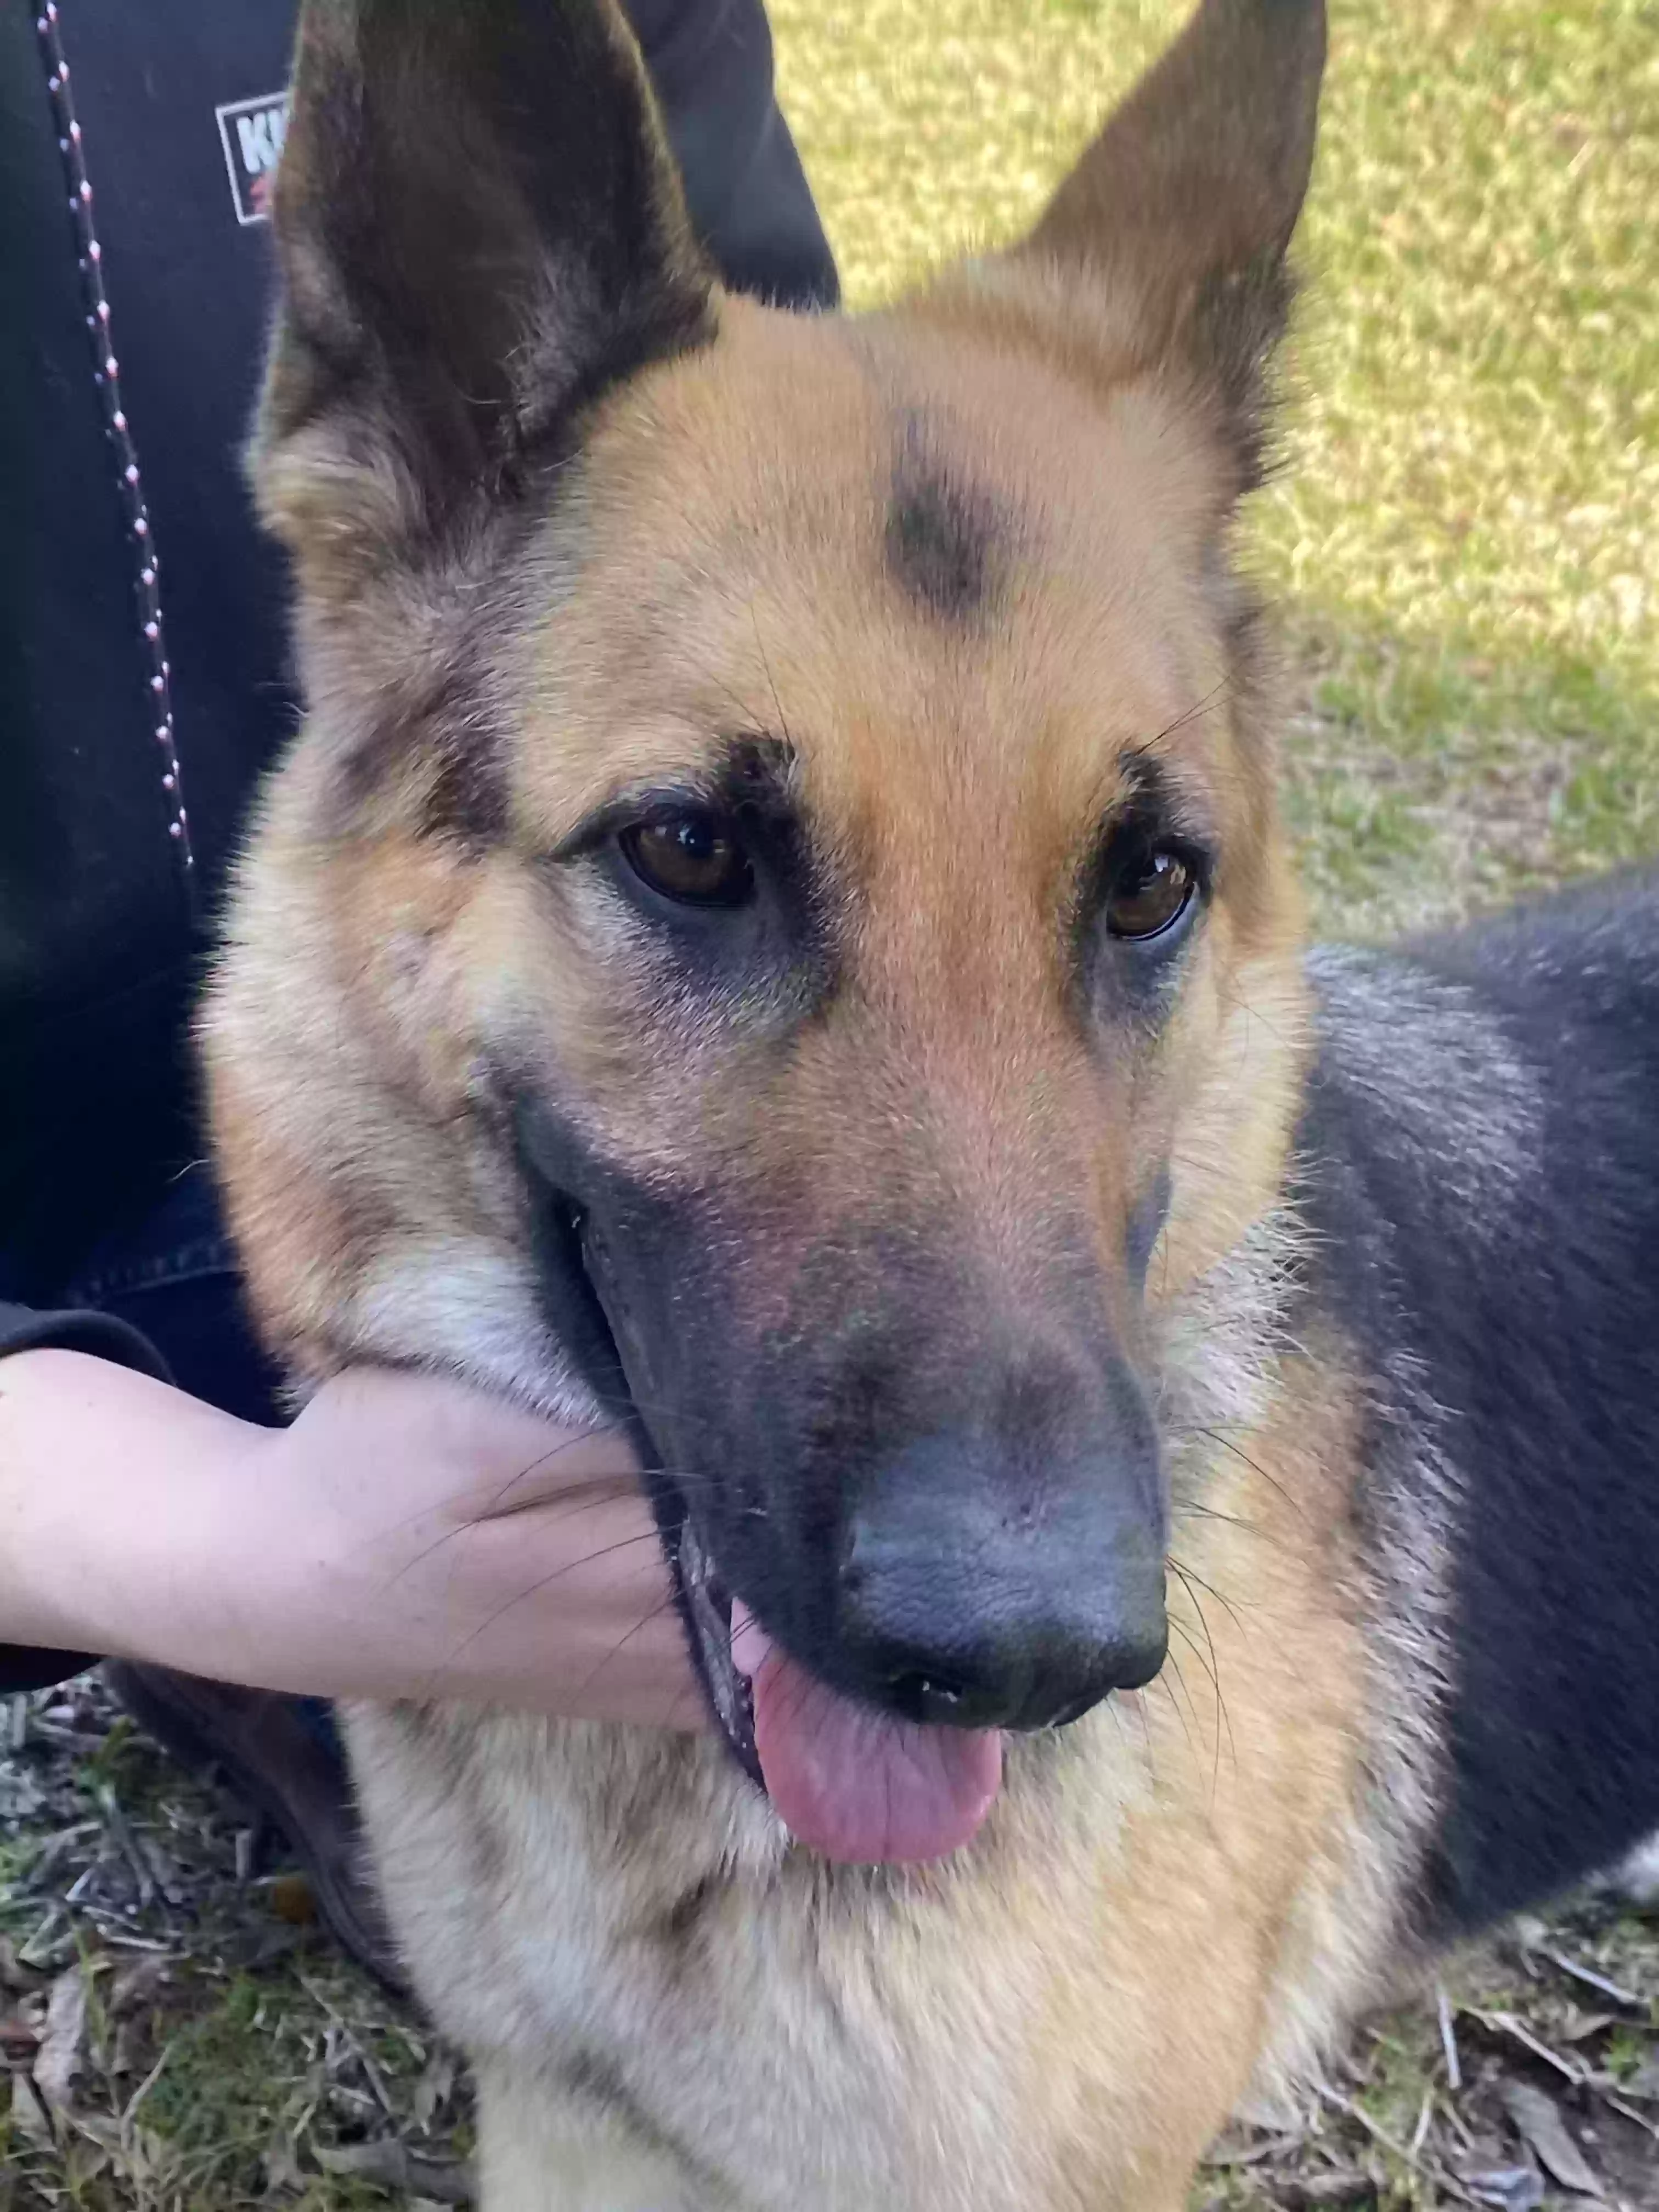 adoptable Dog in Lewisville,TX named Suki